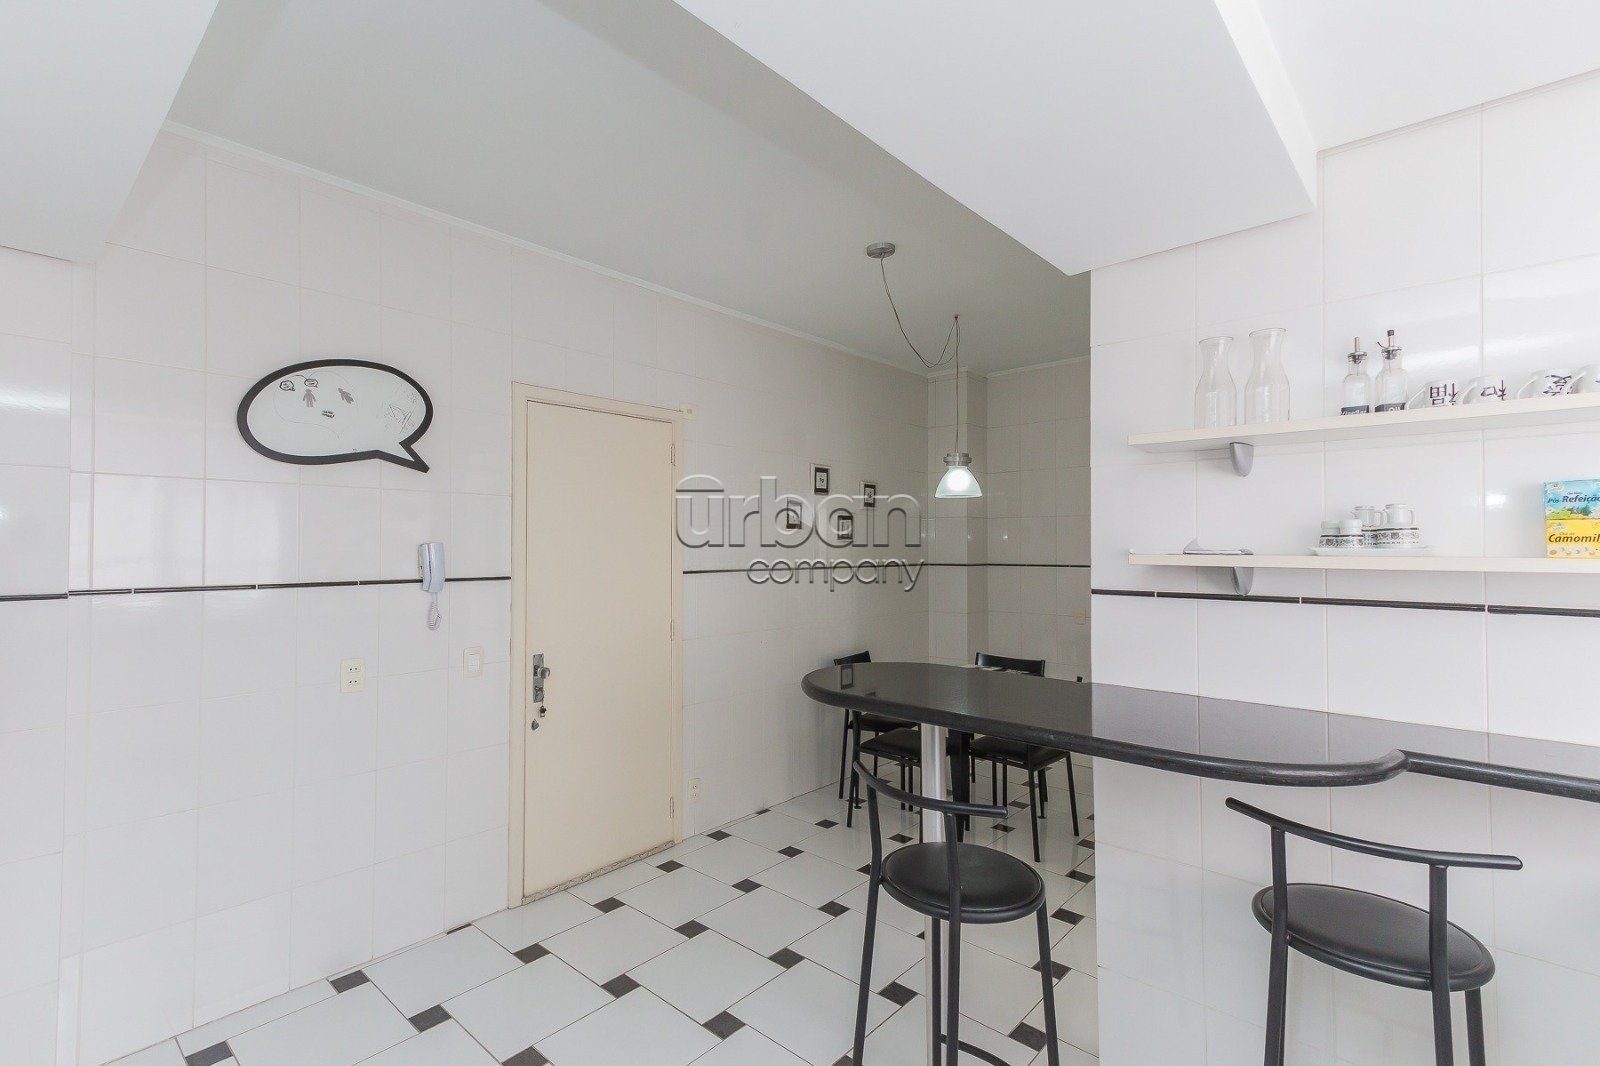 Apartamento com 167m², 3 quartos, 1 suíte, 1 vaga, no bairro Moinhos de Vento em Porto Alegre